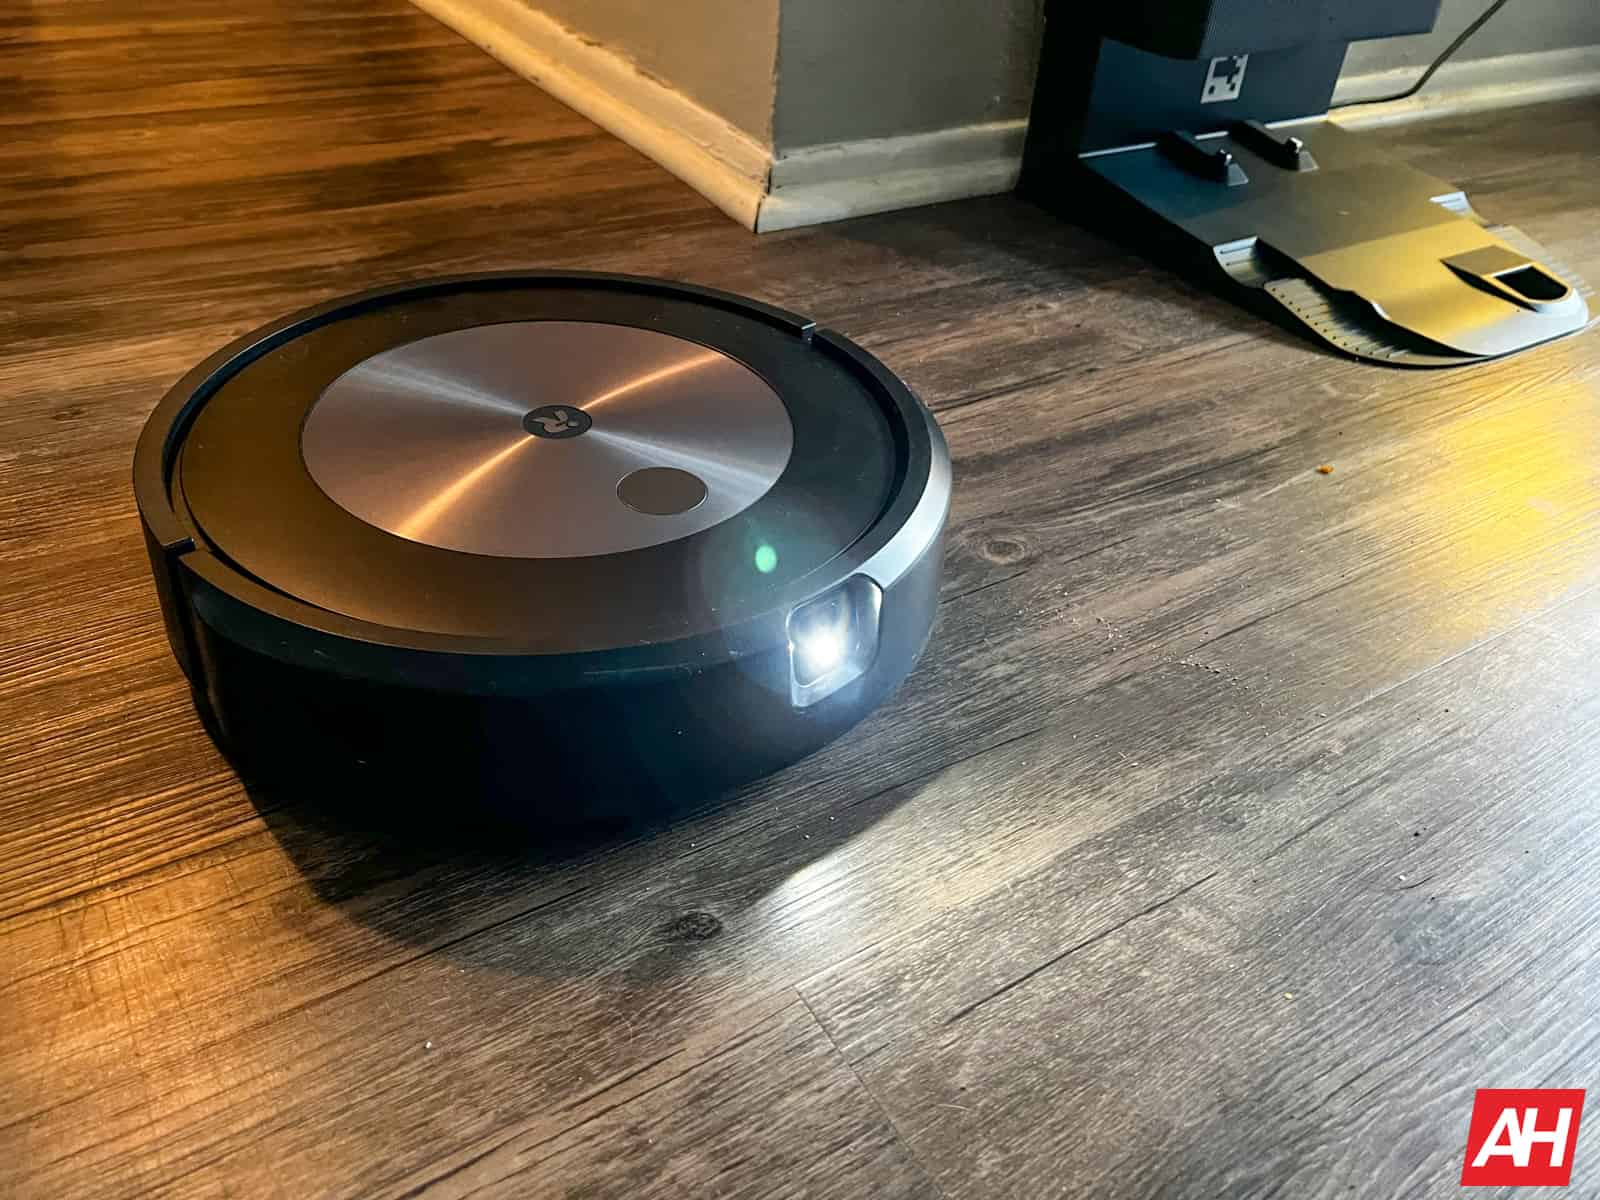 Obtenga el iRobot Roomba j7 por su precio más bajo hasta ahora, solo $ 297